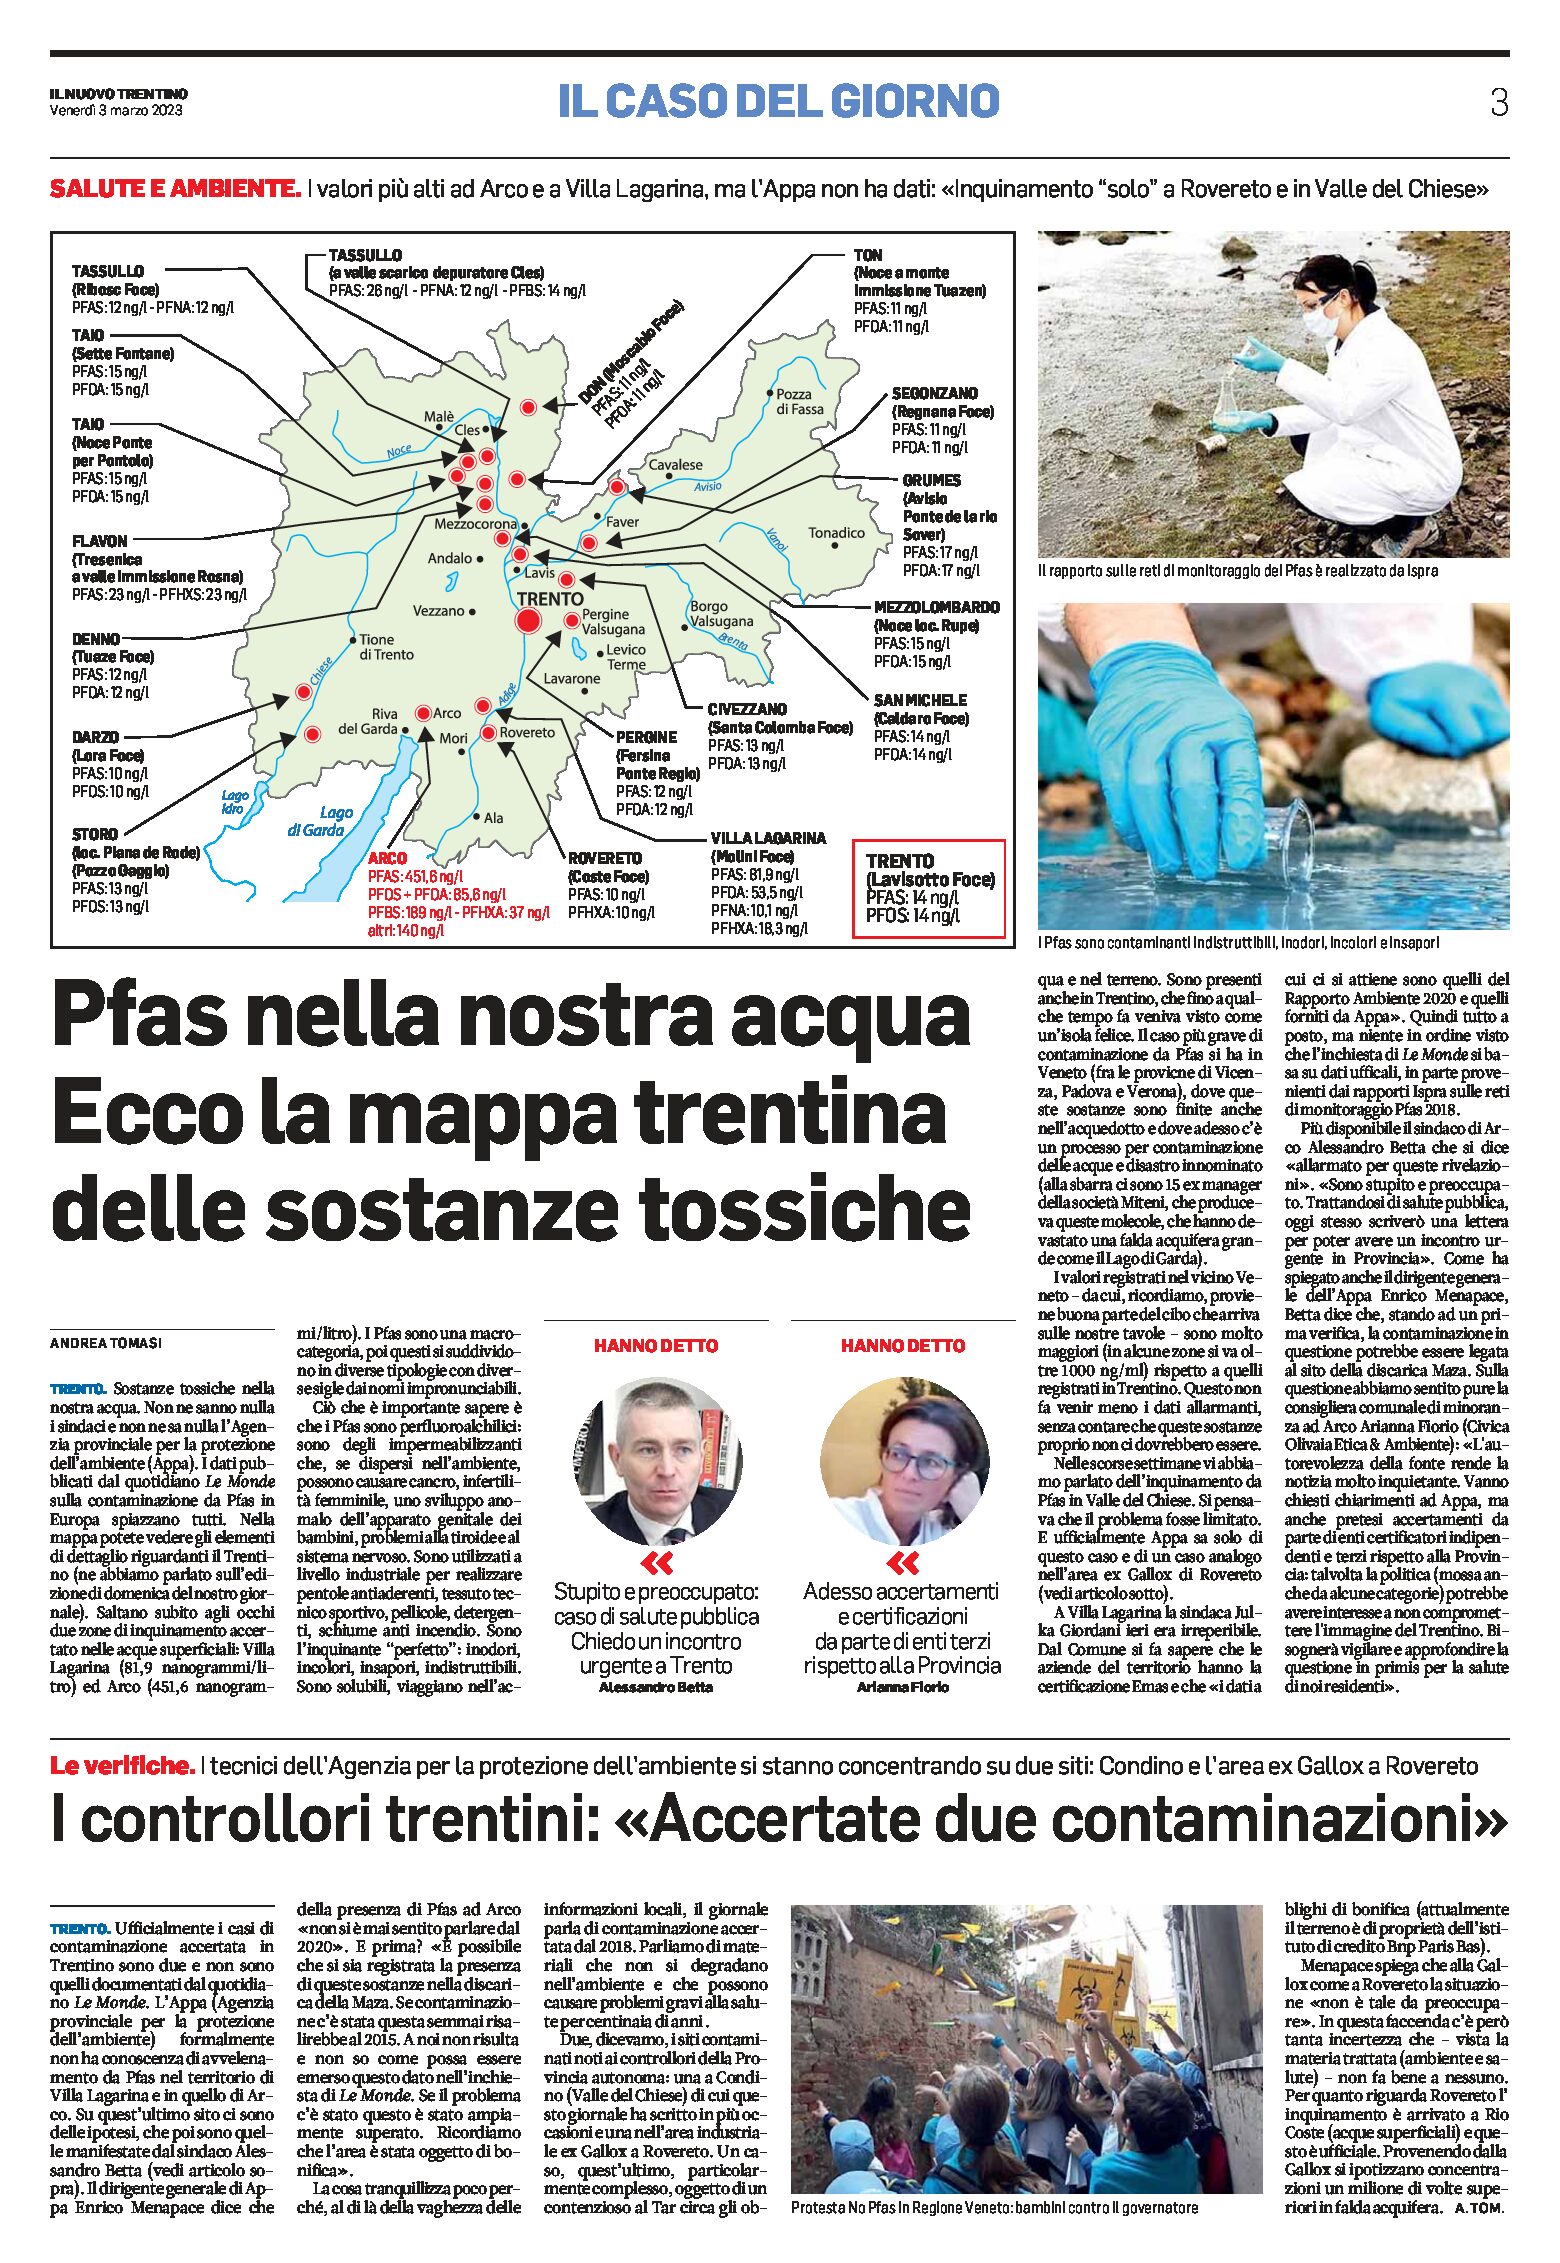 Trentino, Pfas: ecco la mappa delle sostanze tossiche